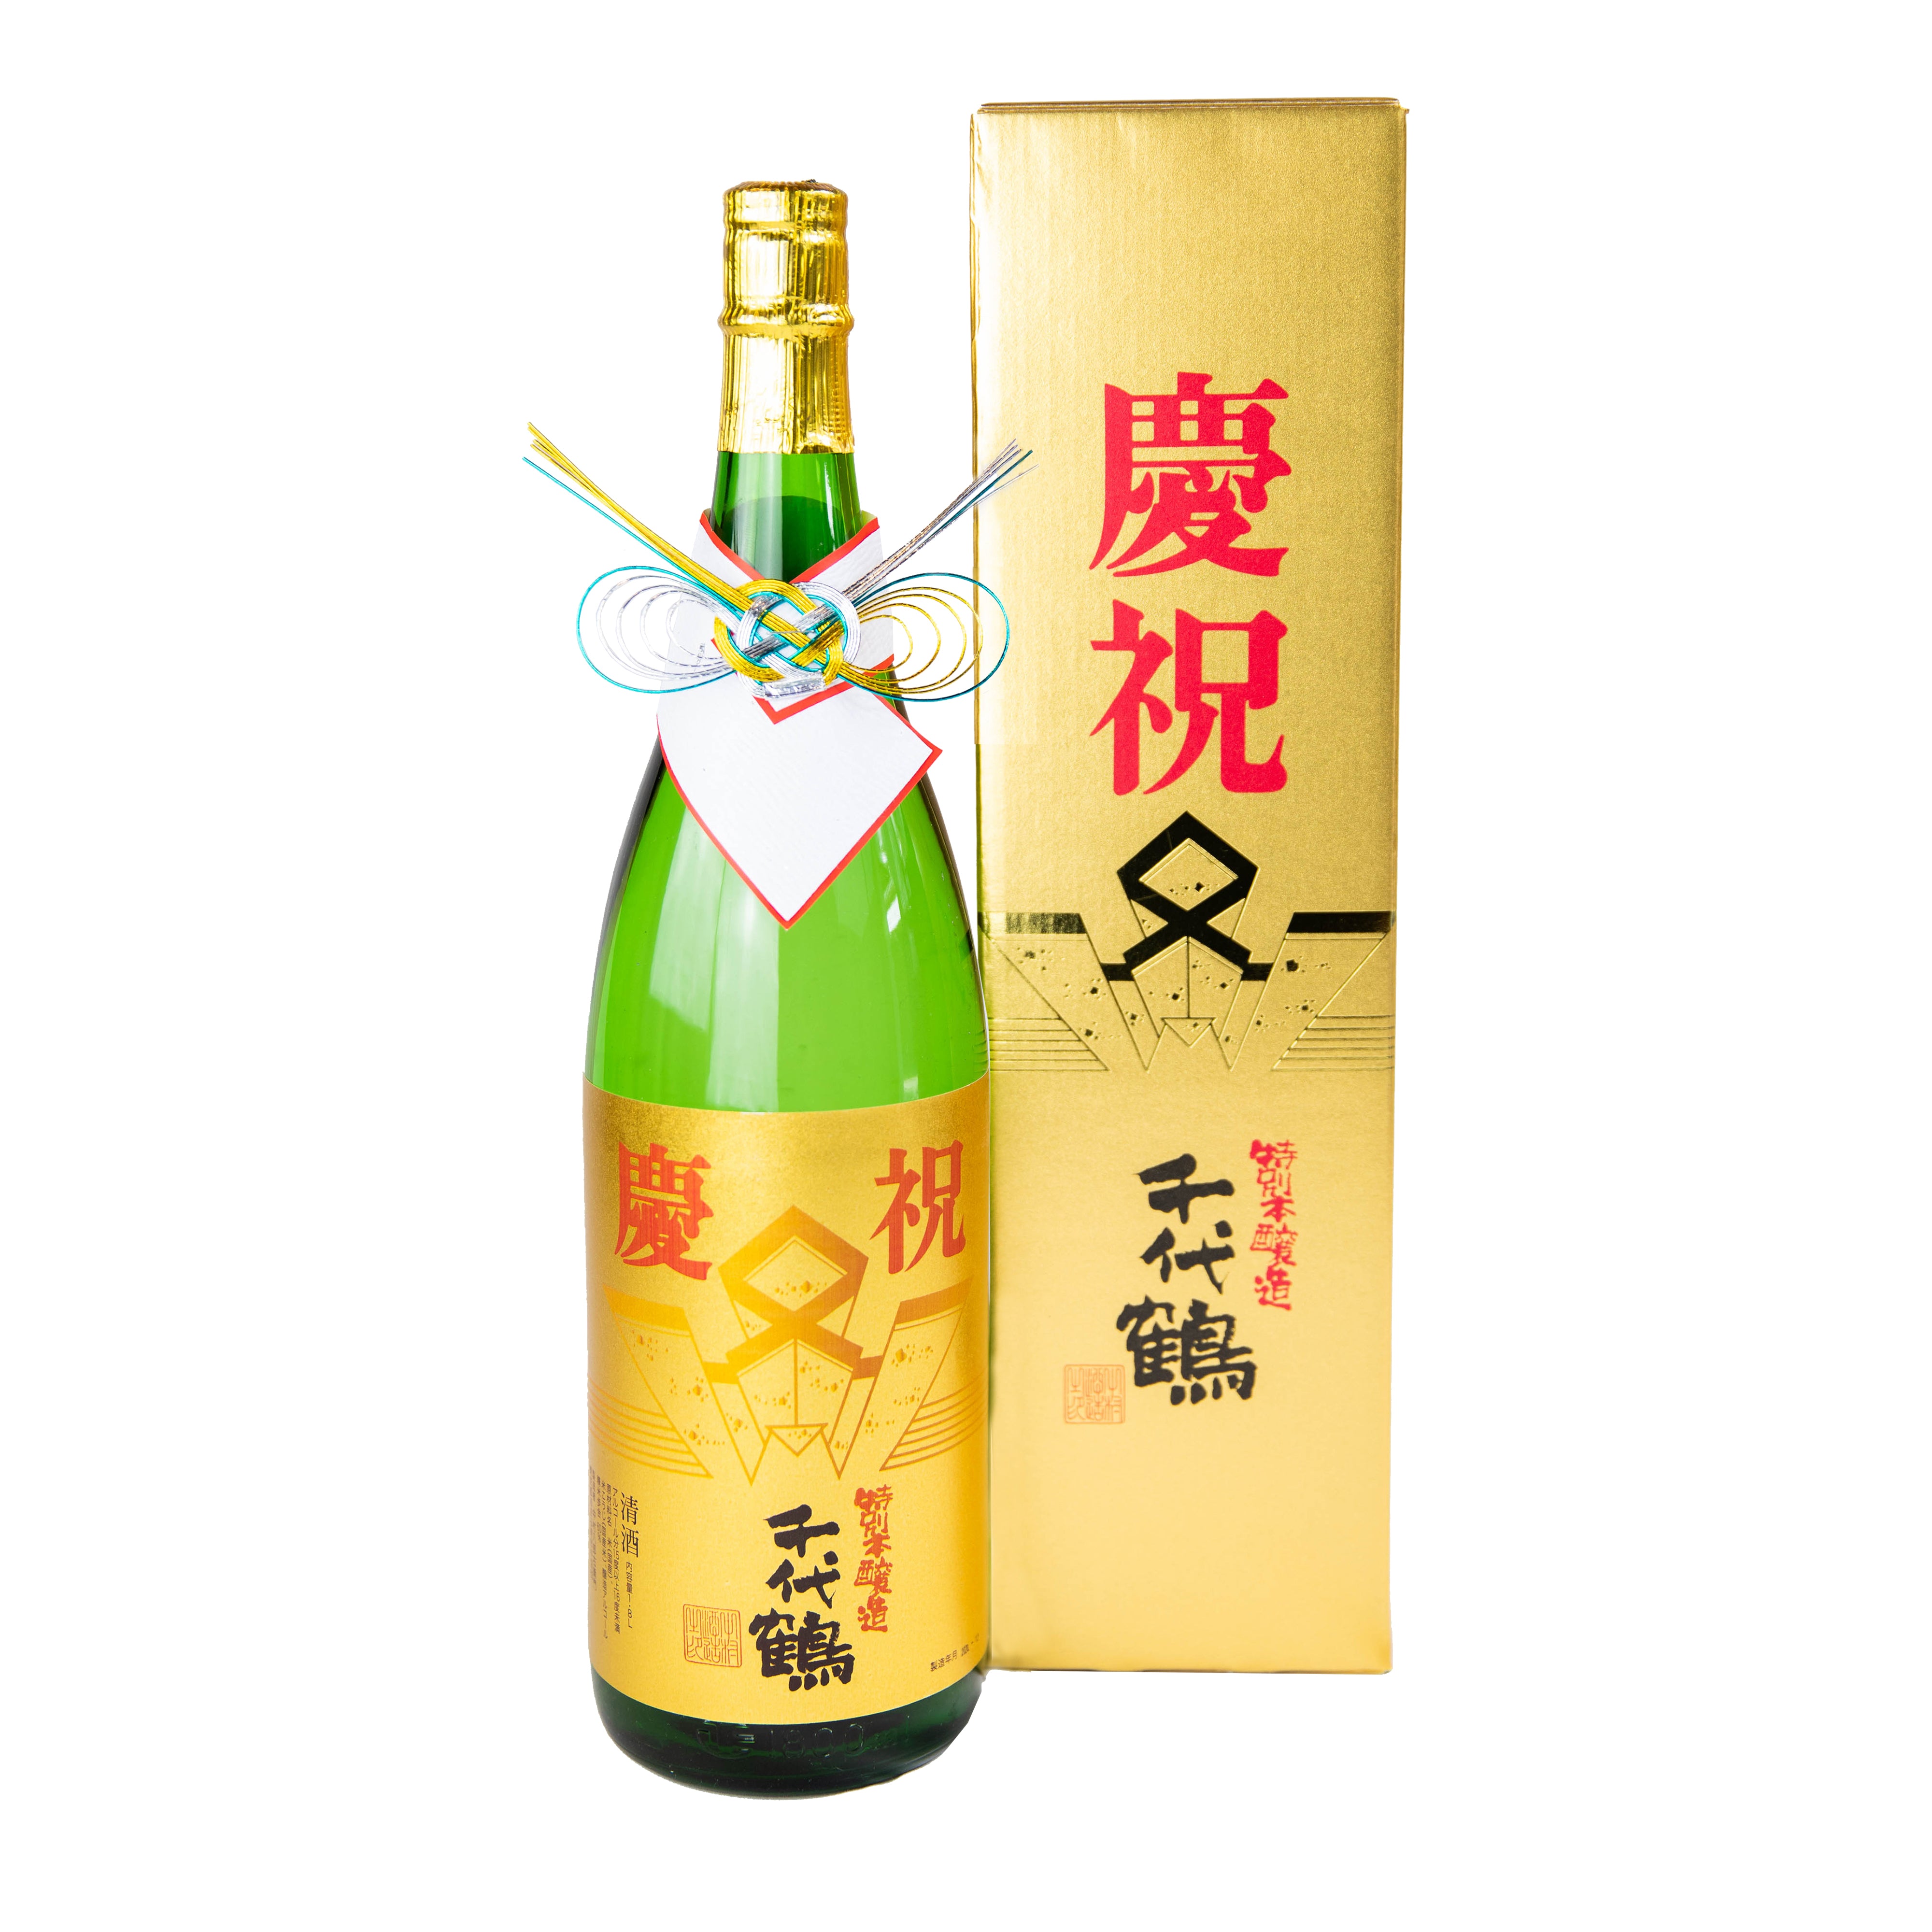 千代鶴 特別本醸造 慶祝